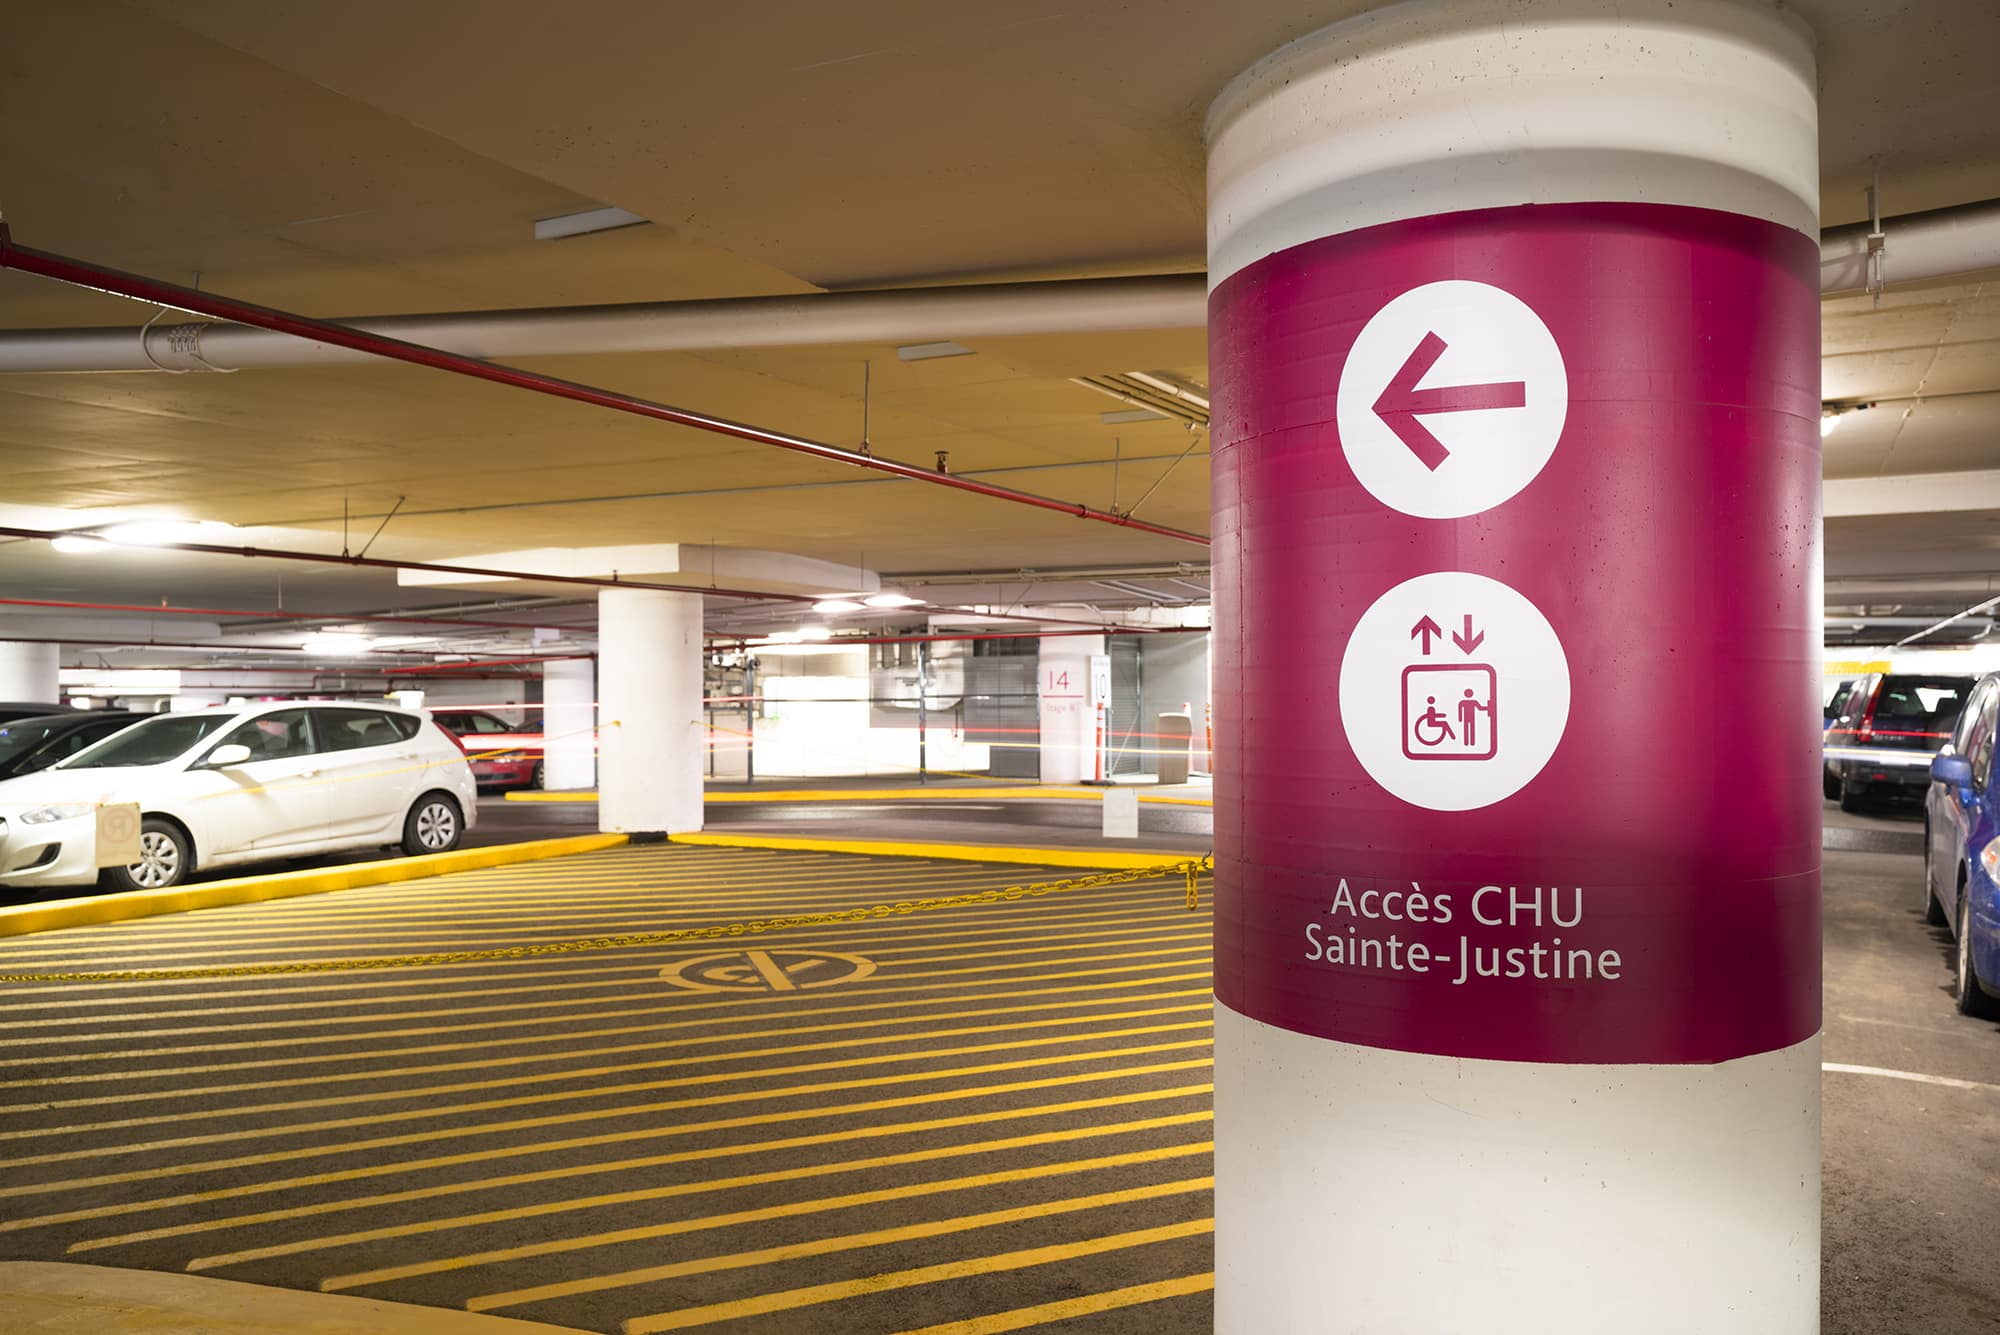 Arium Design - Directionnel sur colonne dans le stationnement souterrain menant aux ascenseurs de l'Hôpital Sainte-Justine.